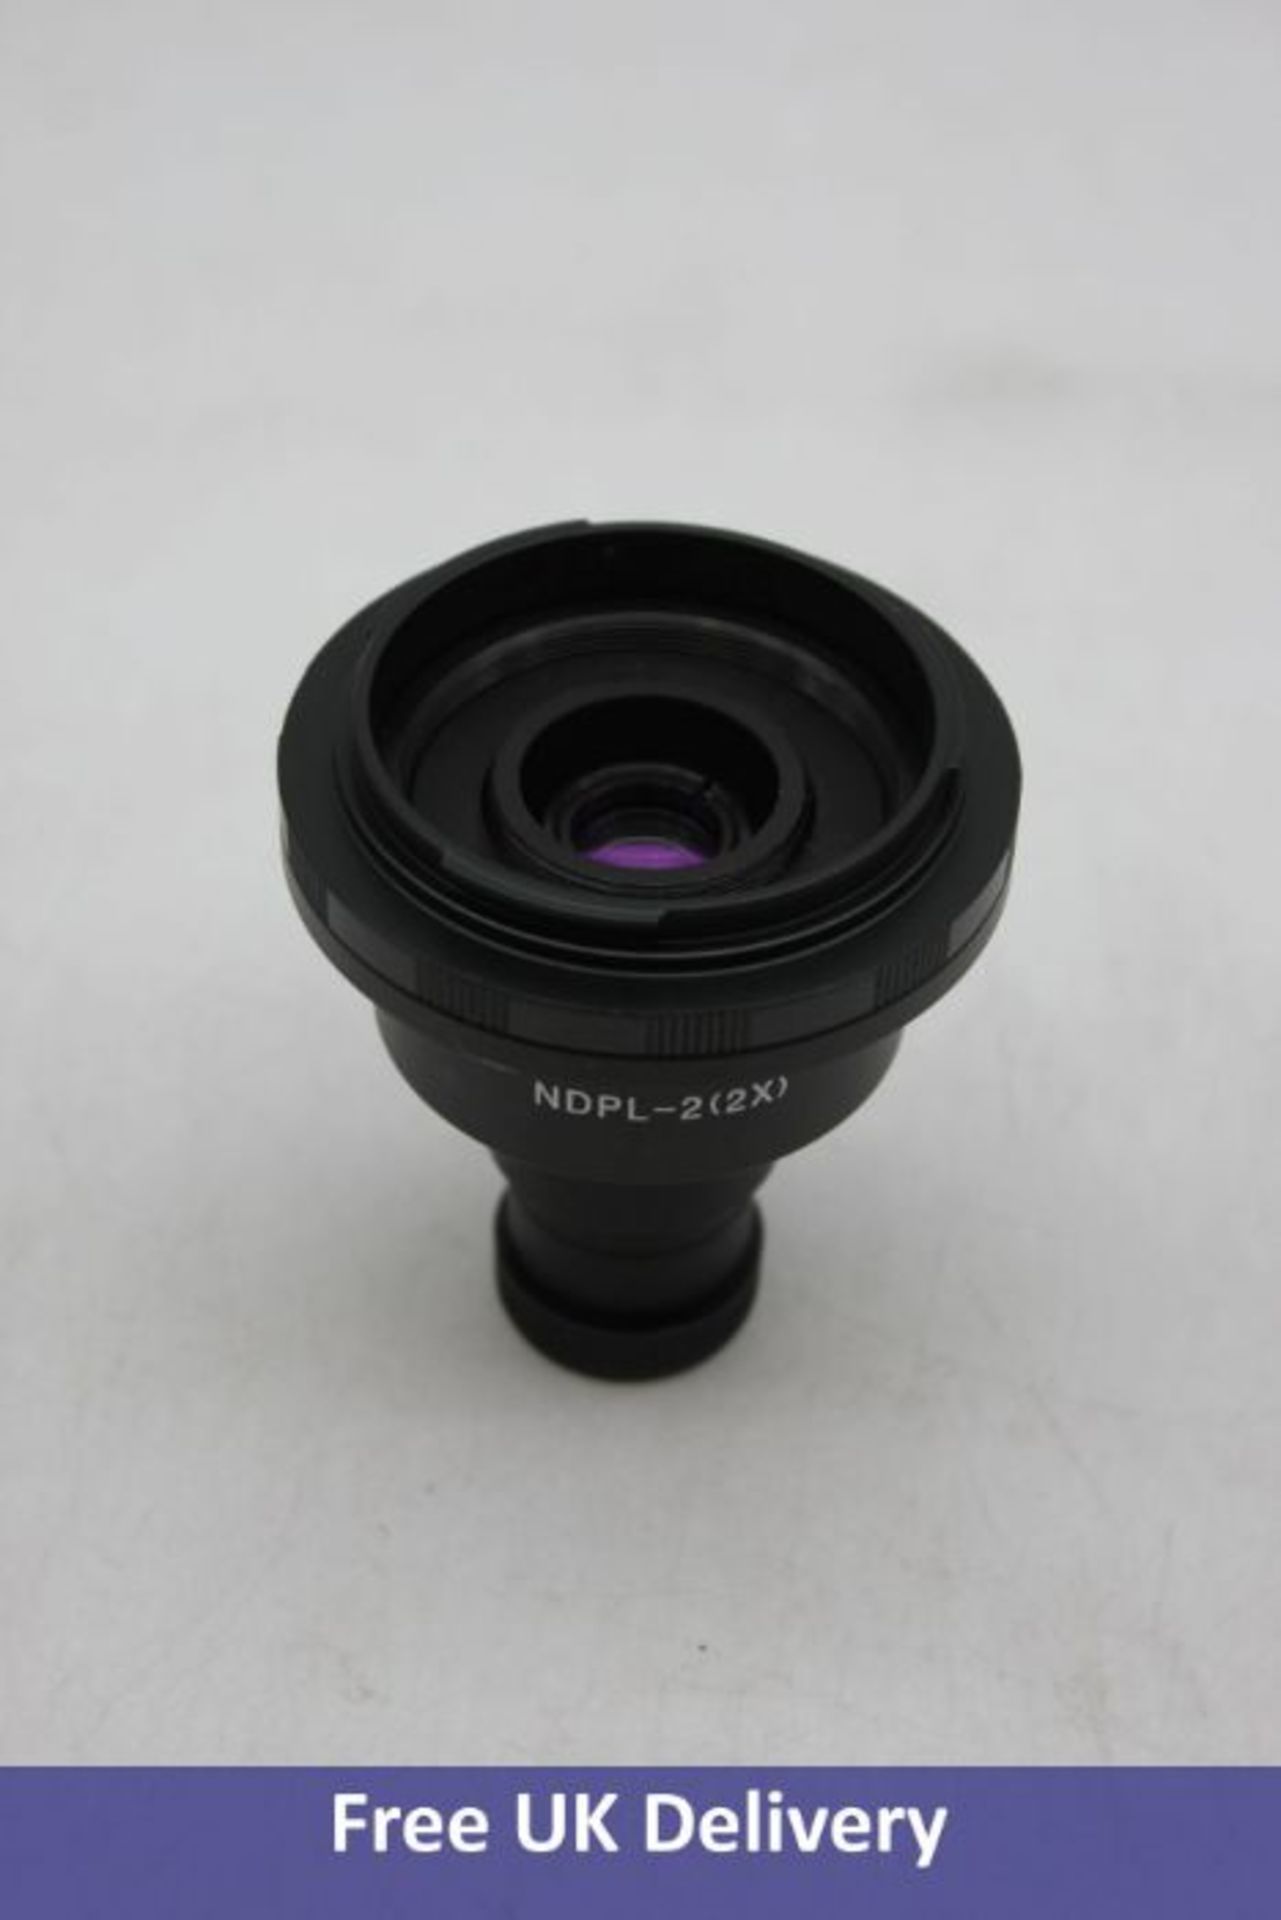 Canon SLR/DSLR Camera Adapter for Microscopes, Black, NDPL-2(2)